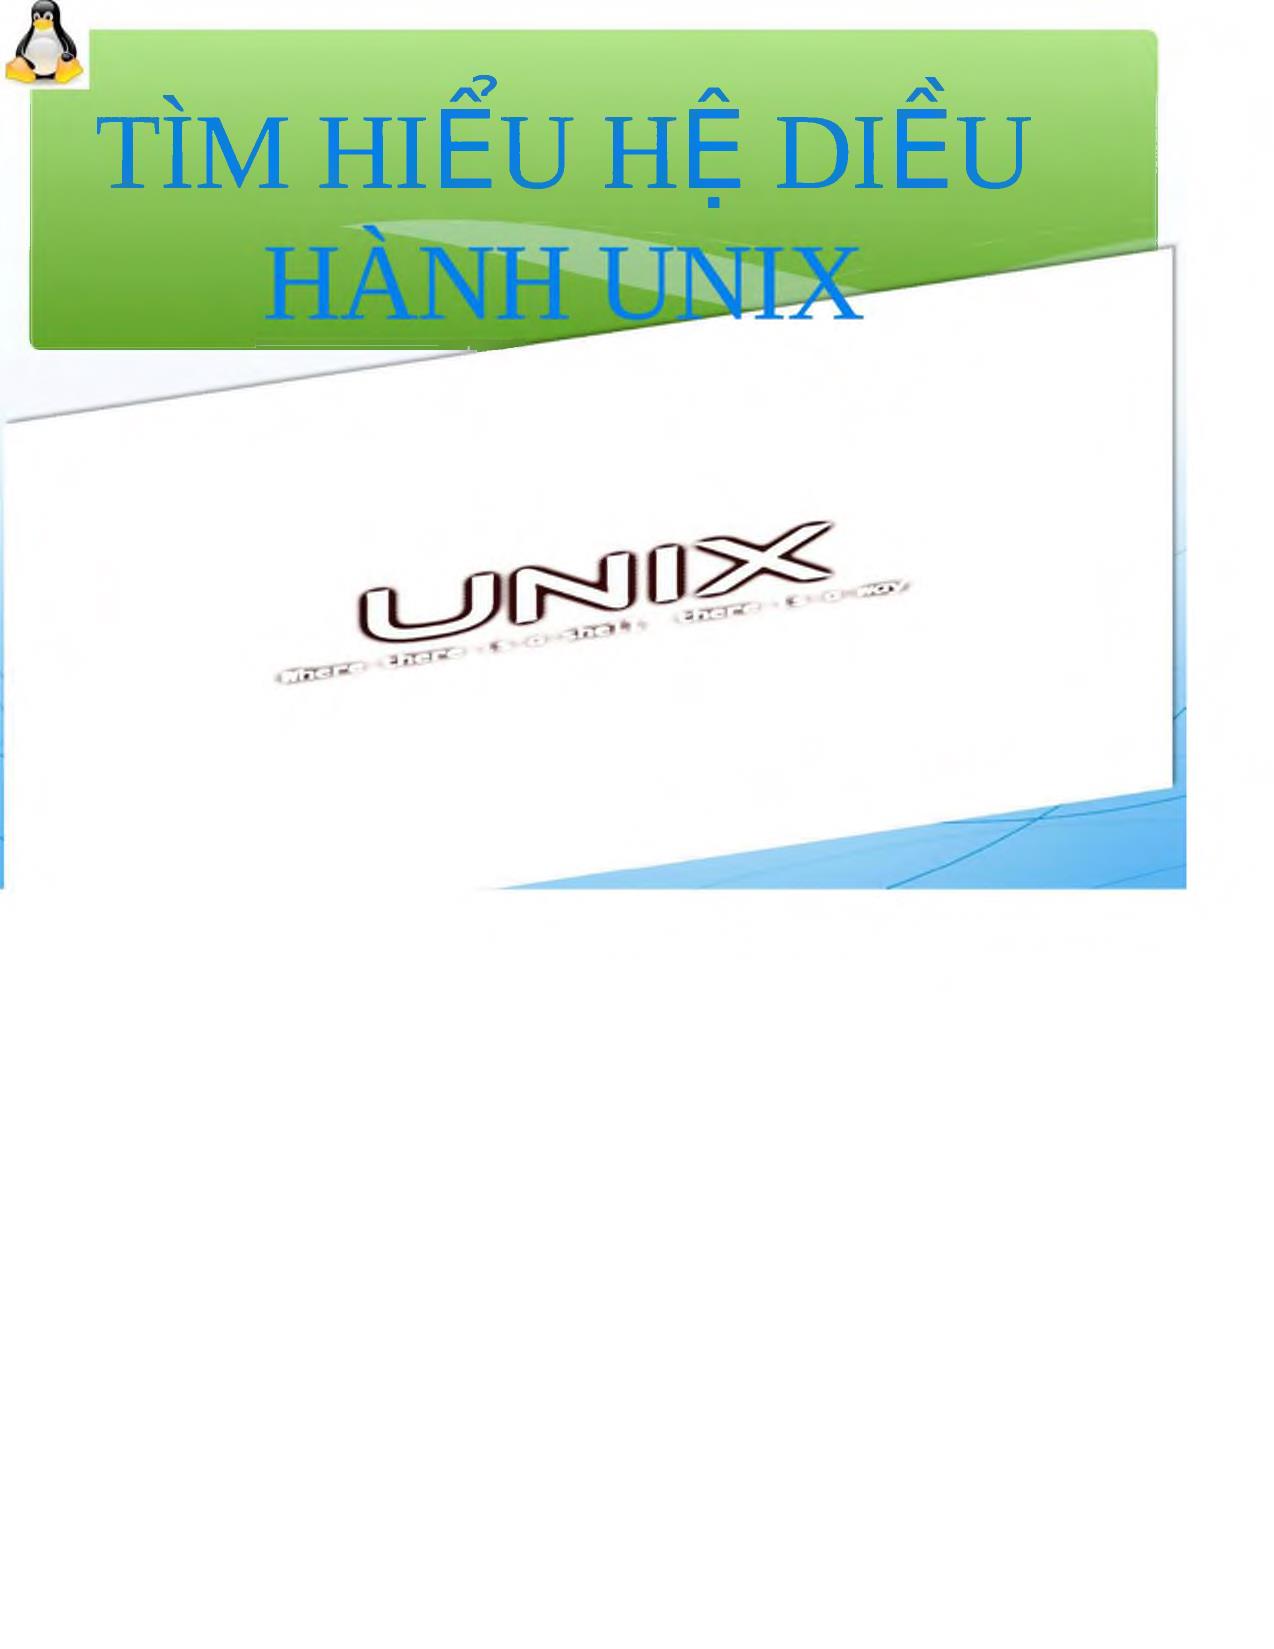 Tìm hiểu hệ điều hành UNIX trang 1